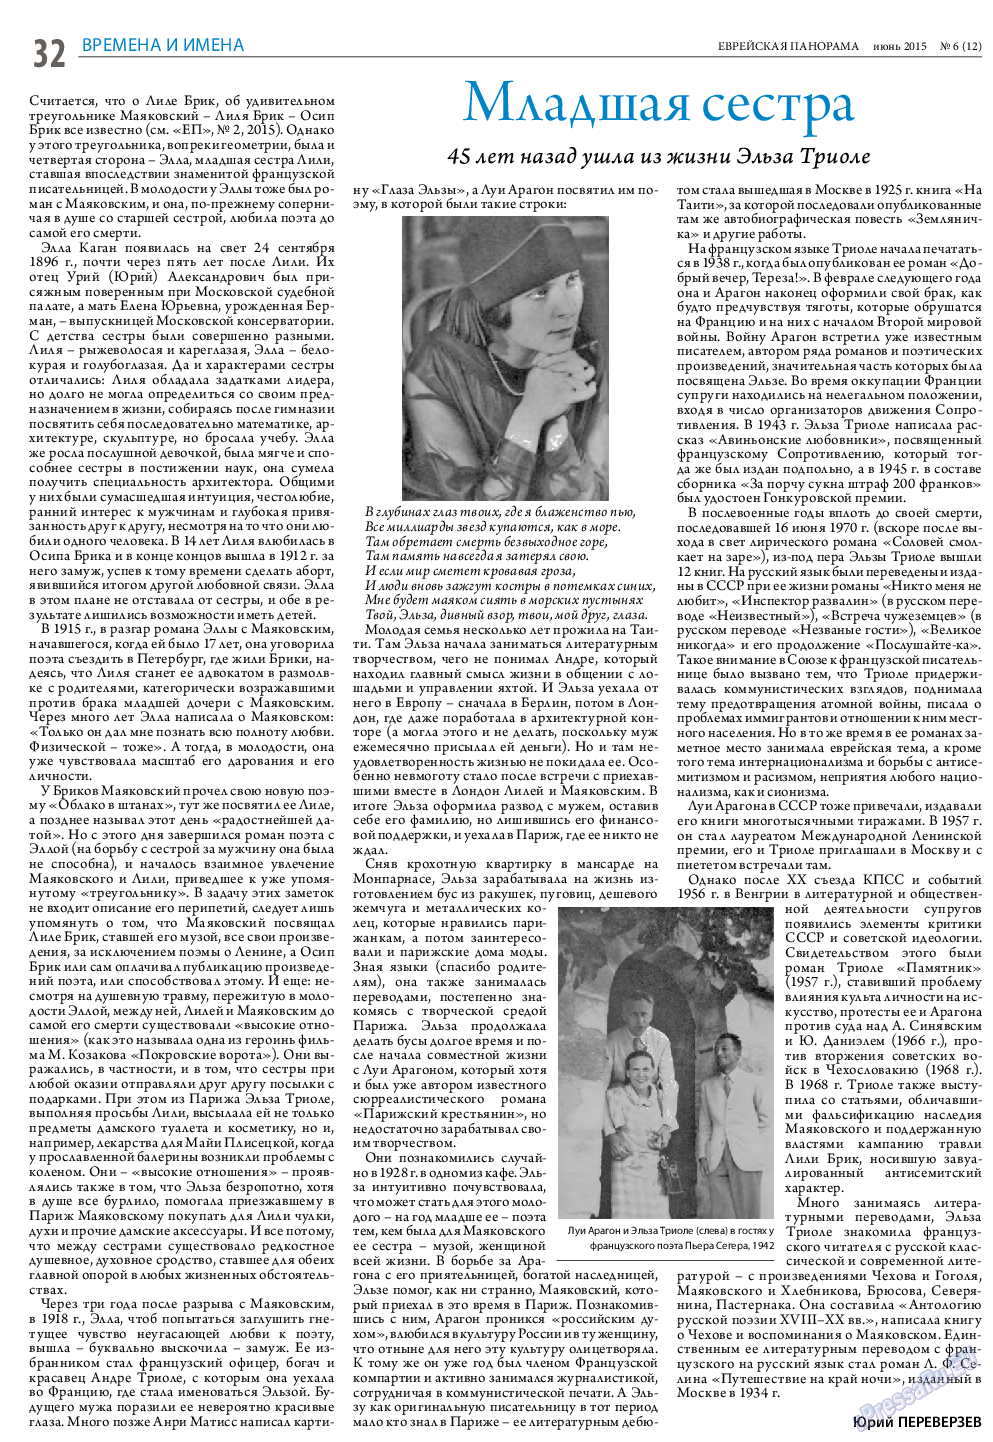 Еврейская панорама (газета). 2015 год, номер 6, стр. 32